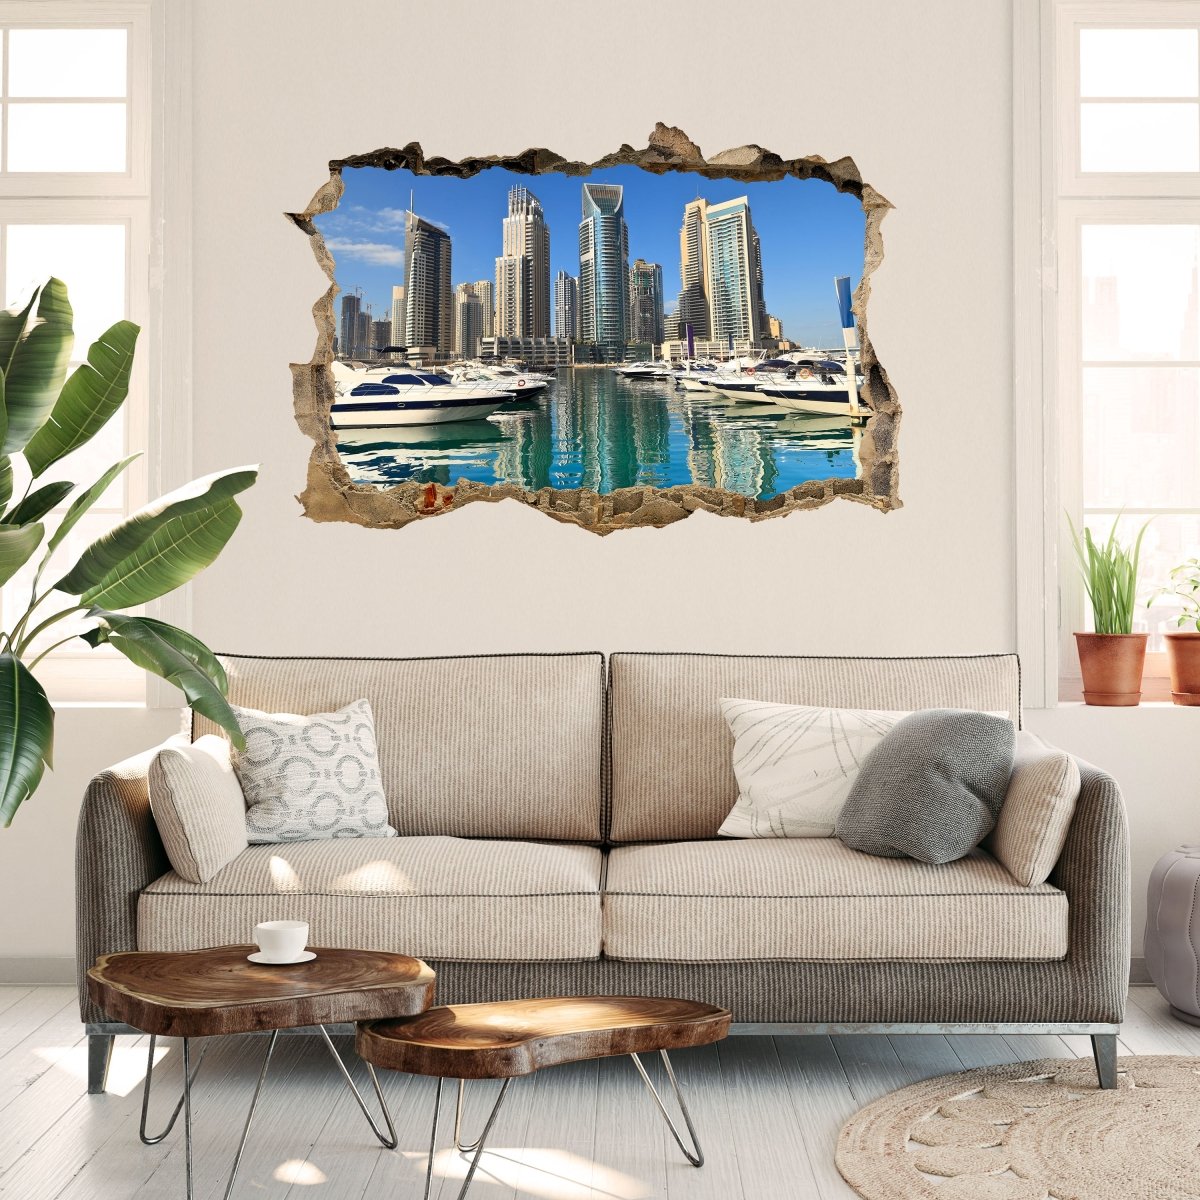 3D wall sticker Dubai Skyline - Wall Decal M0342